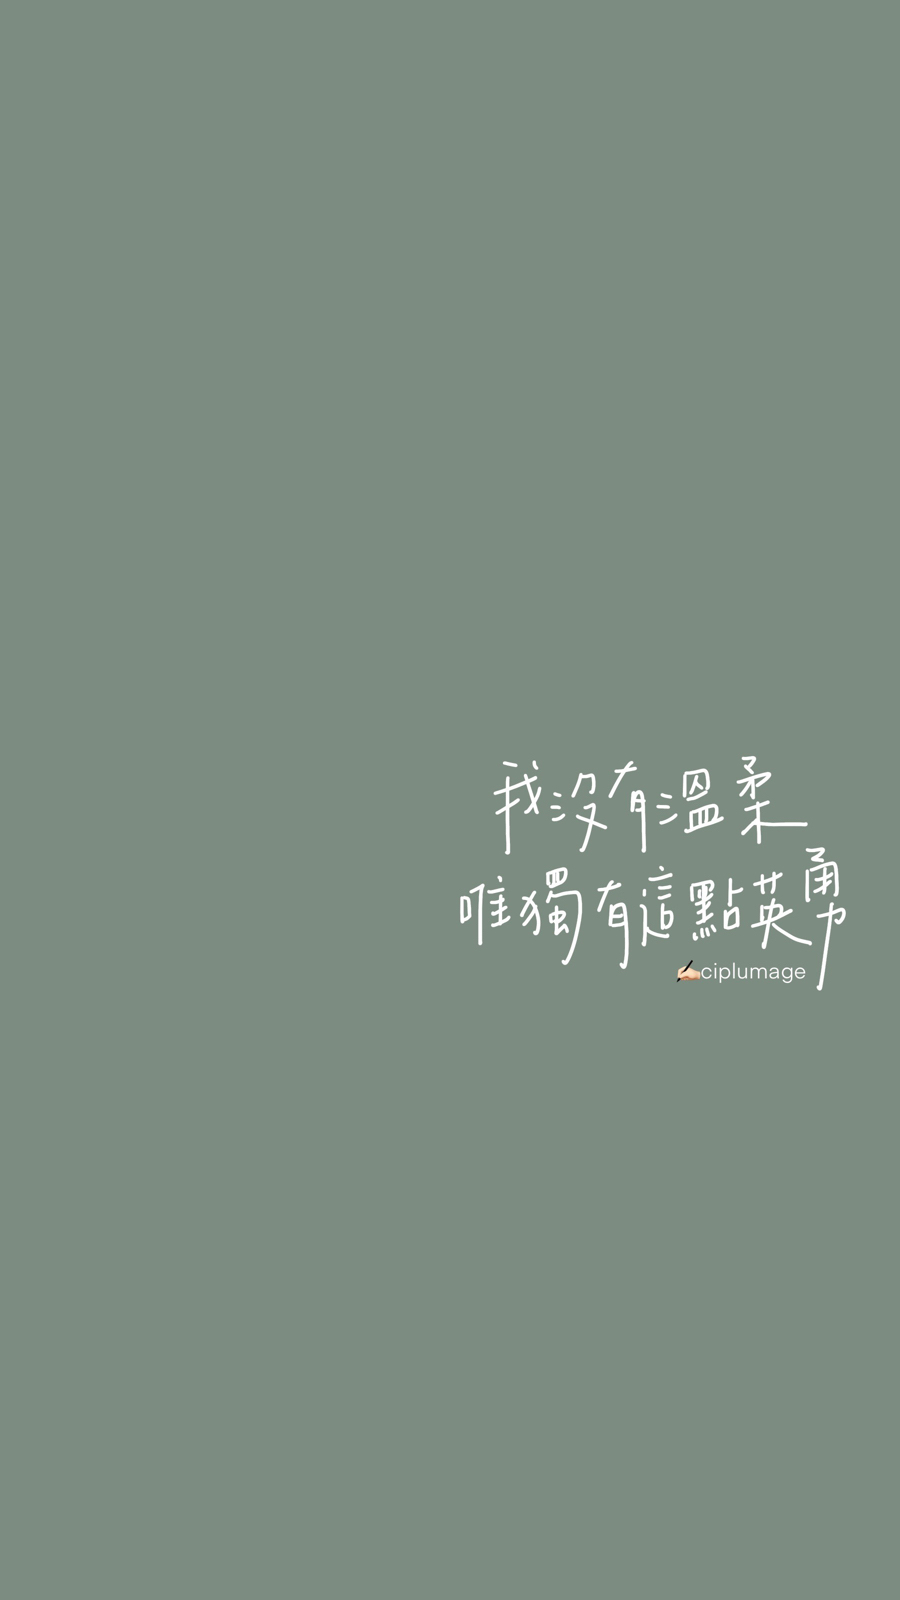 粤语高清手机壁纸图片